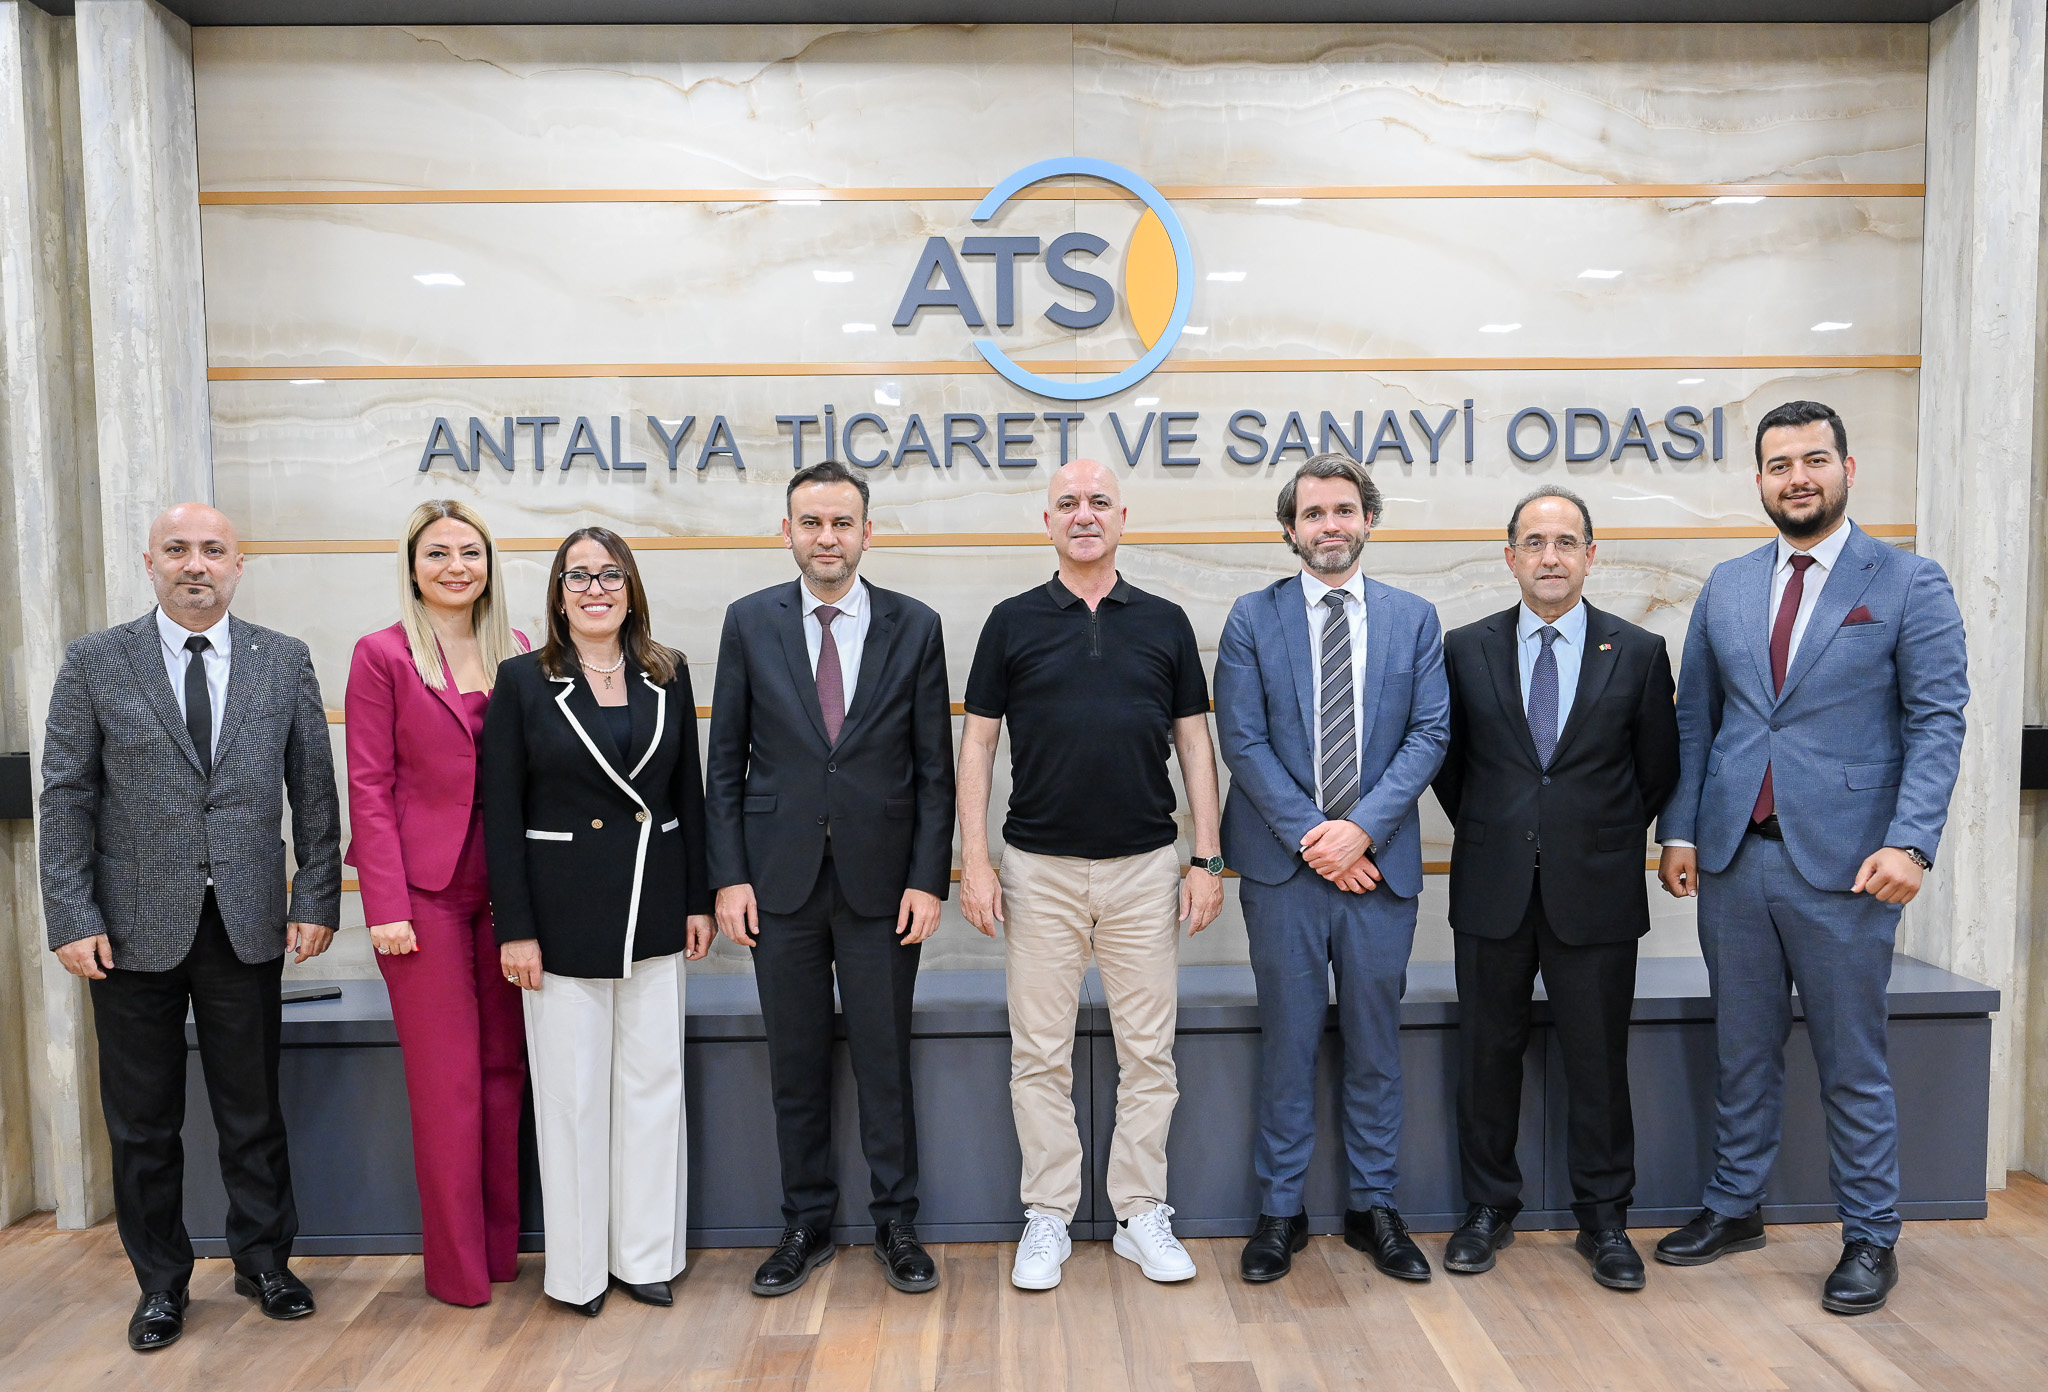 Antalya Ticaret ve Sanayi Odası, İrlanda delegasyonuyla önemli bir toplantı gerçekleştirdi.